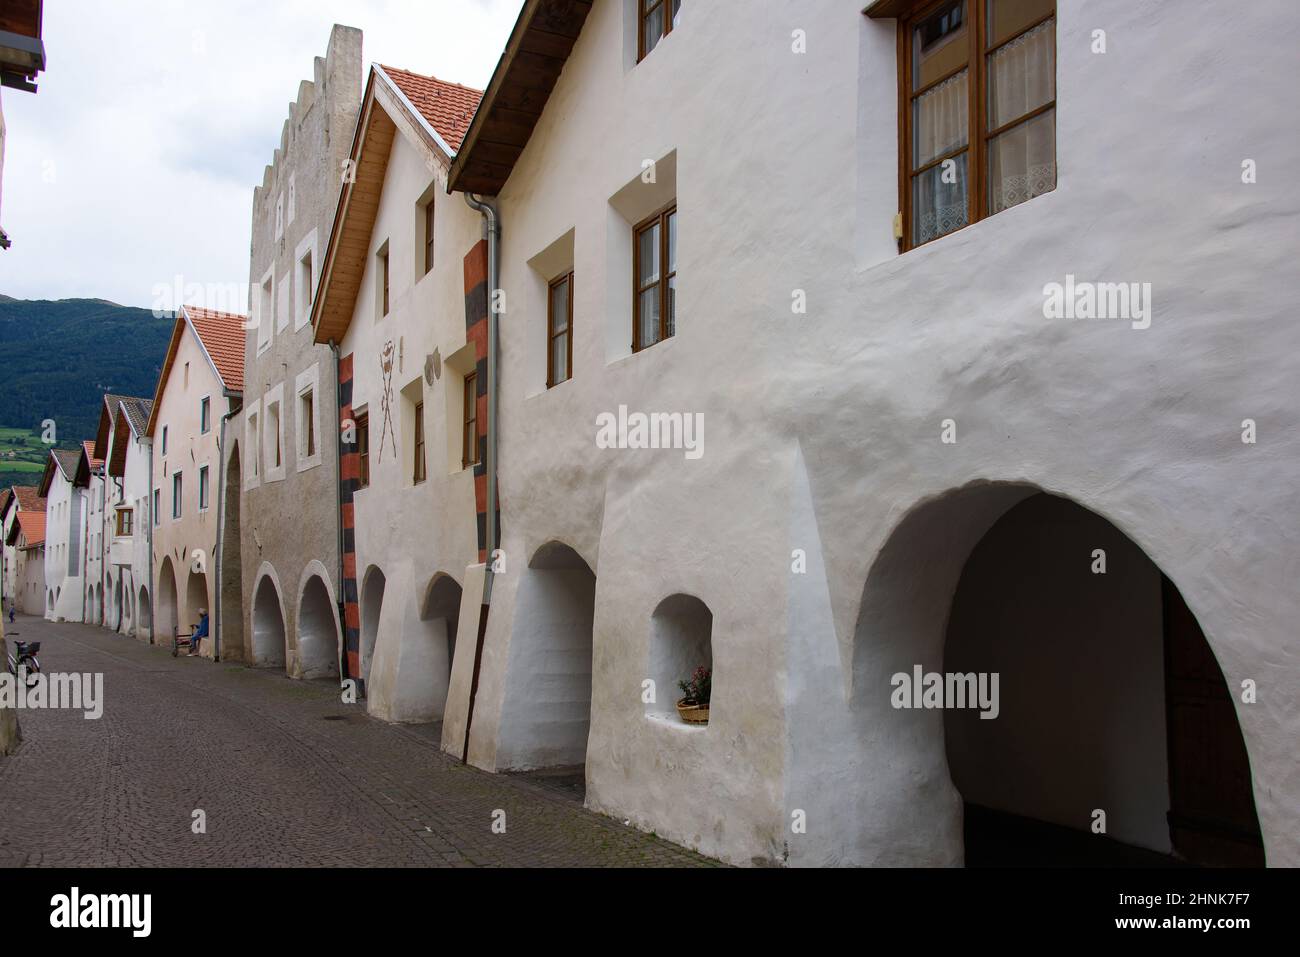 Colonnade in Glurns, Vinschgau Stock Photo